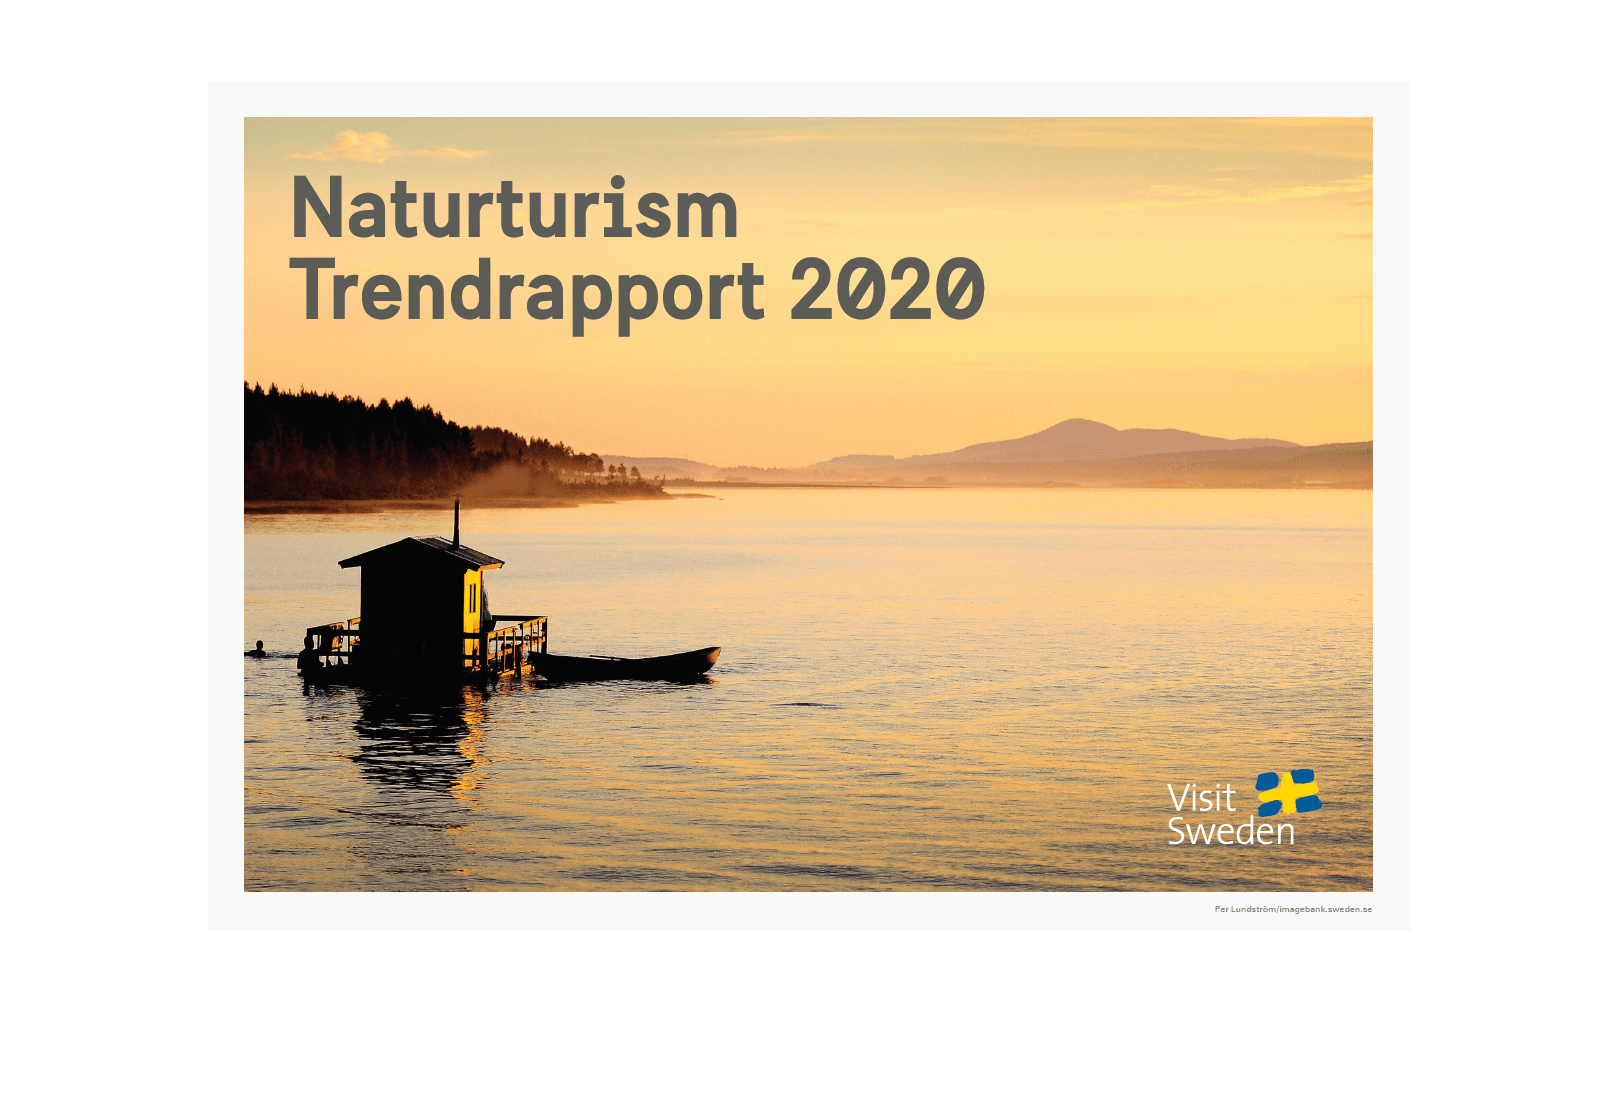 Omslagsbild Trendrapport Naturturism 2020.PNG